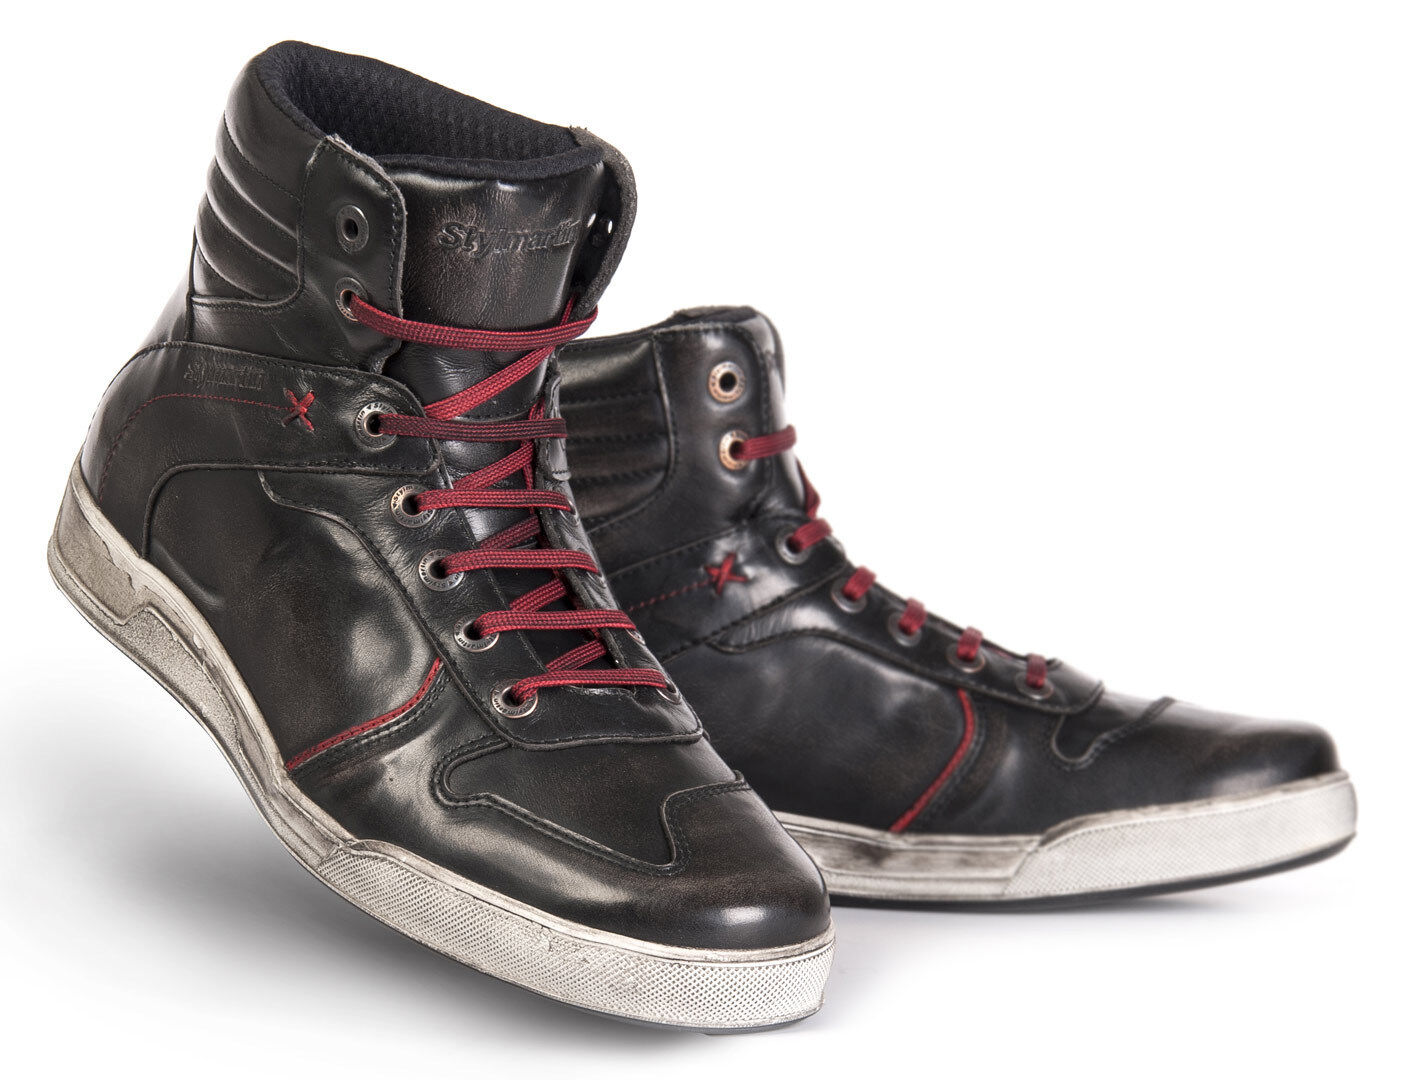 Stylmartin Iron Zapatos de motocicleta - Negro Rojo (36)